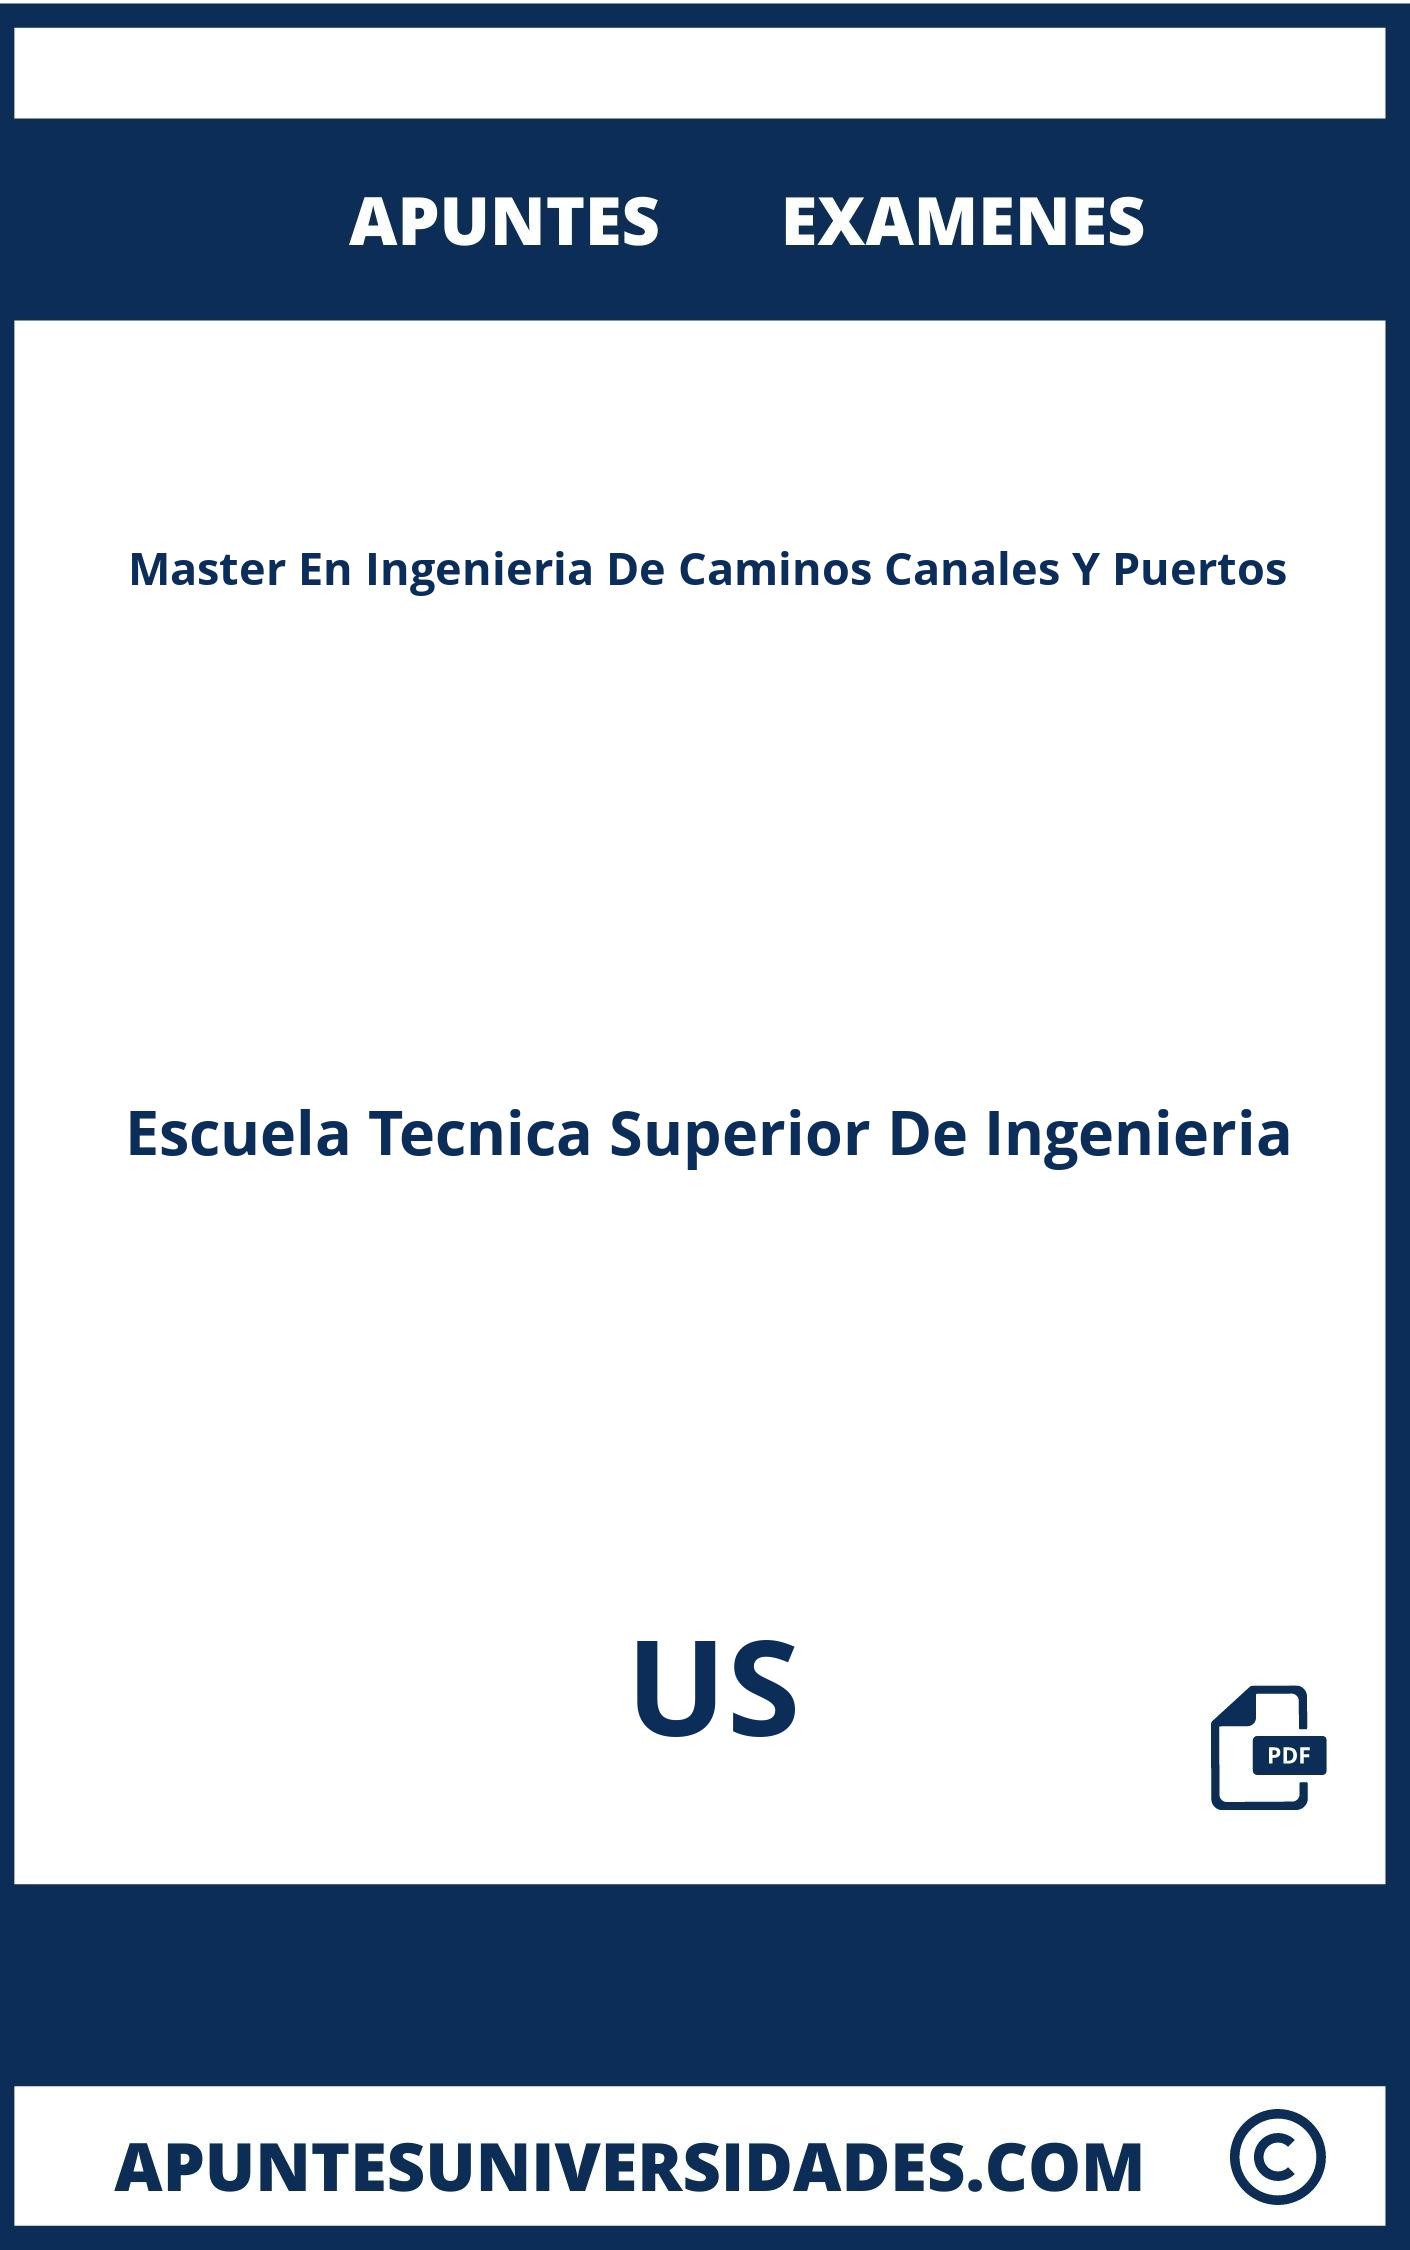 Examenes y Apuntes de Master En Ingenieria De Caminos Canales Y Puertos US